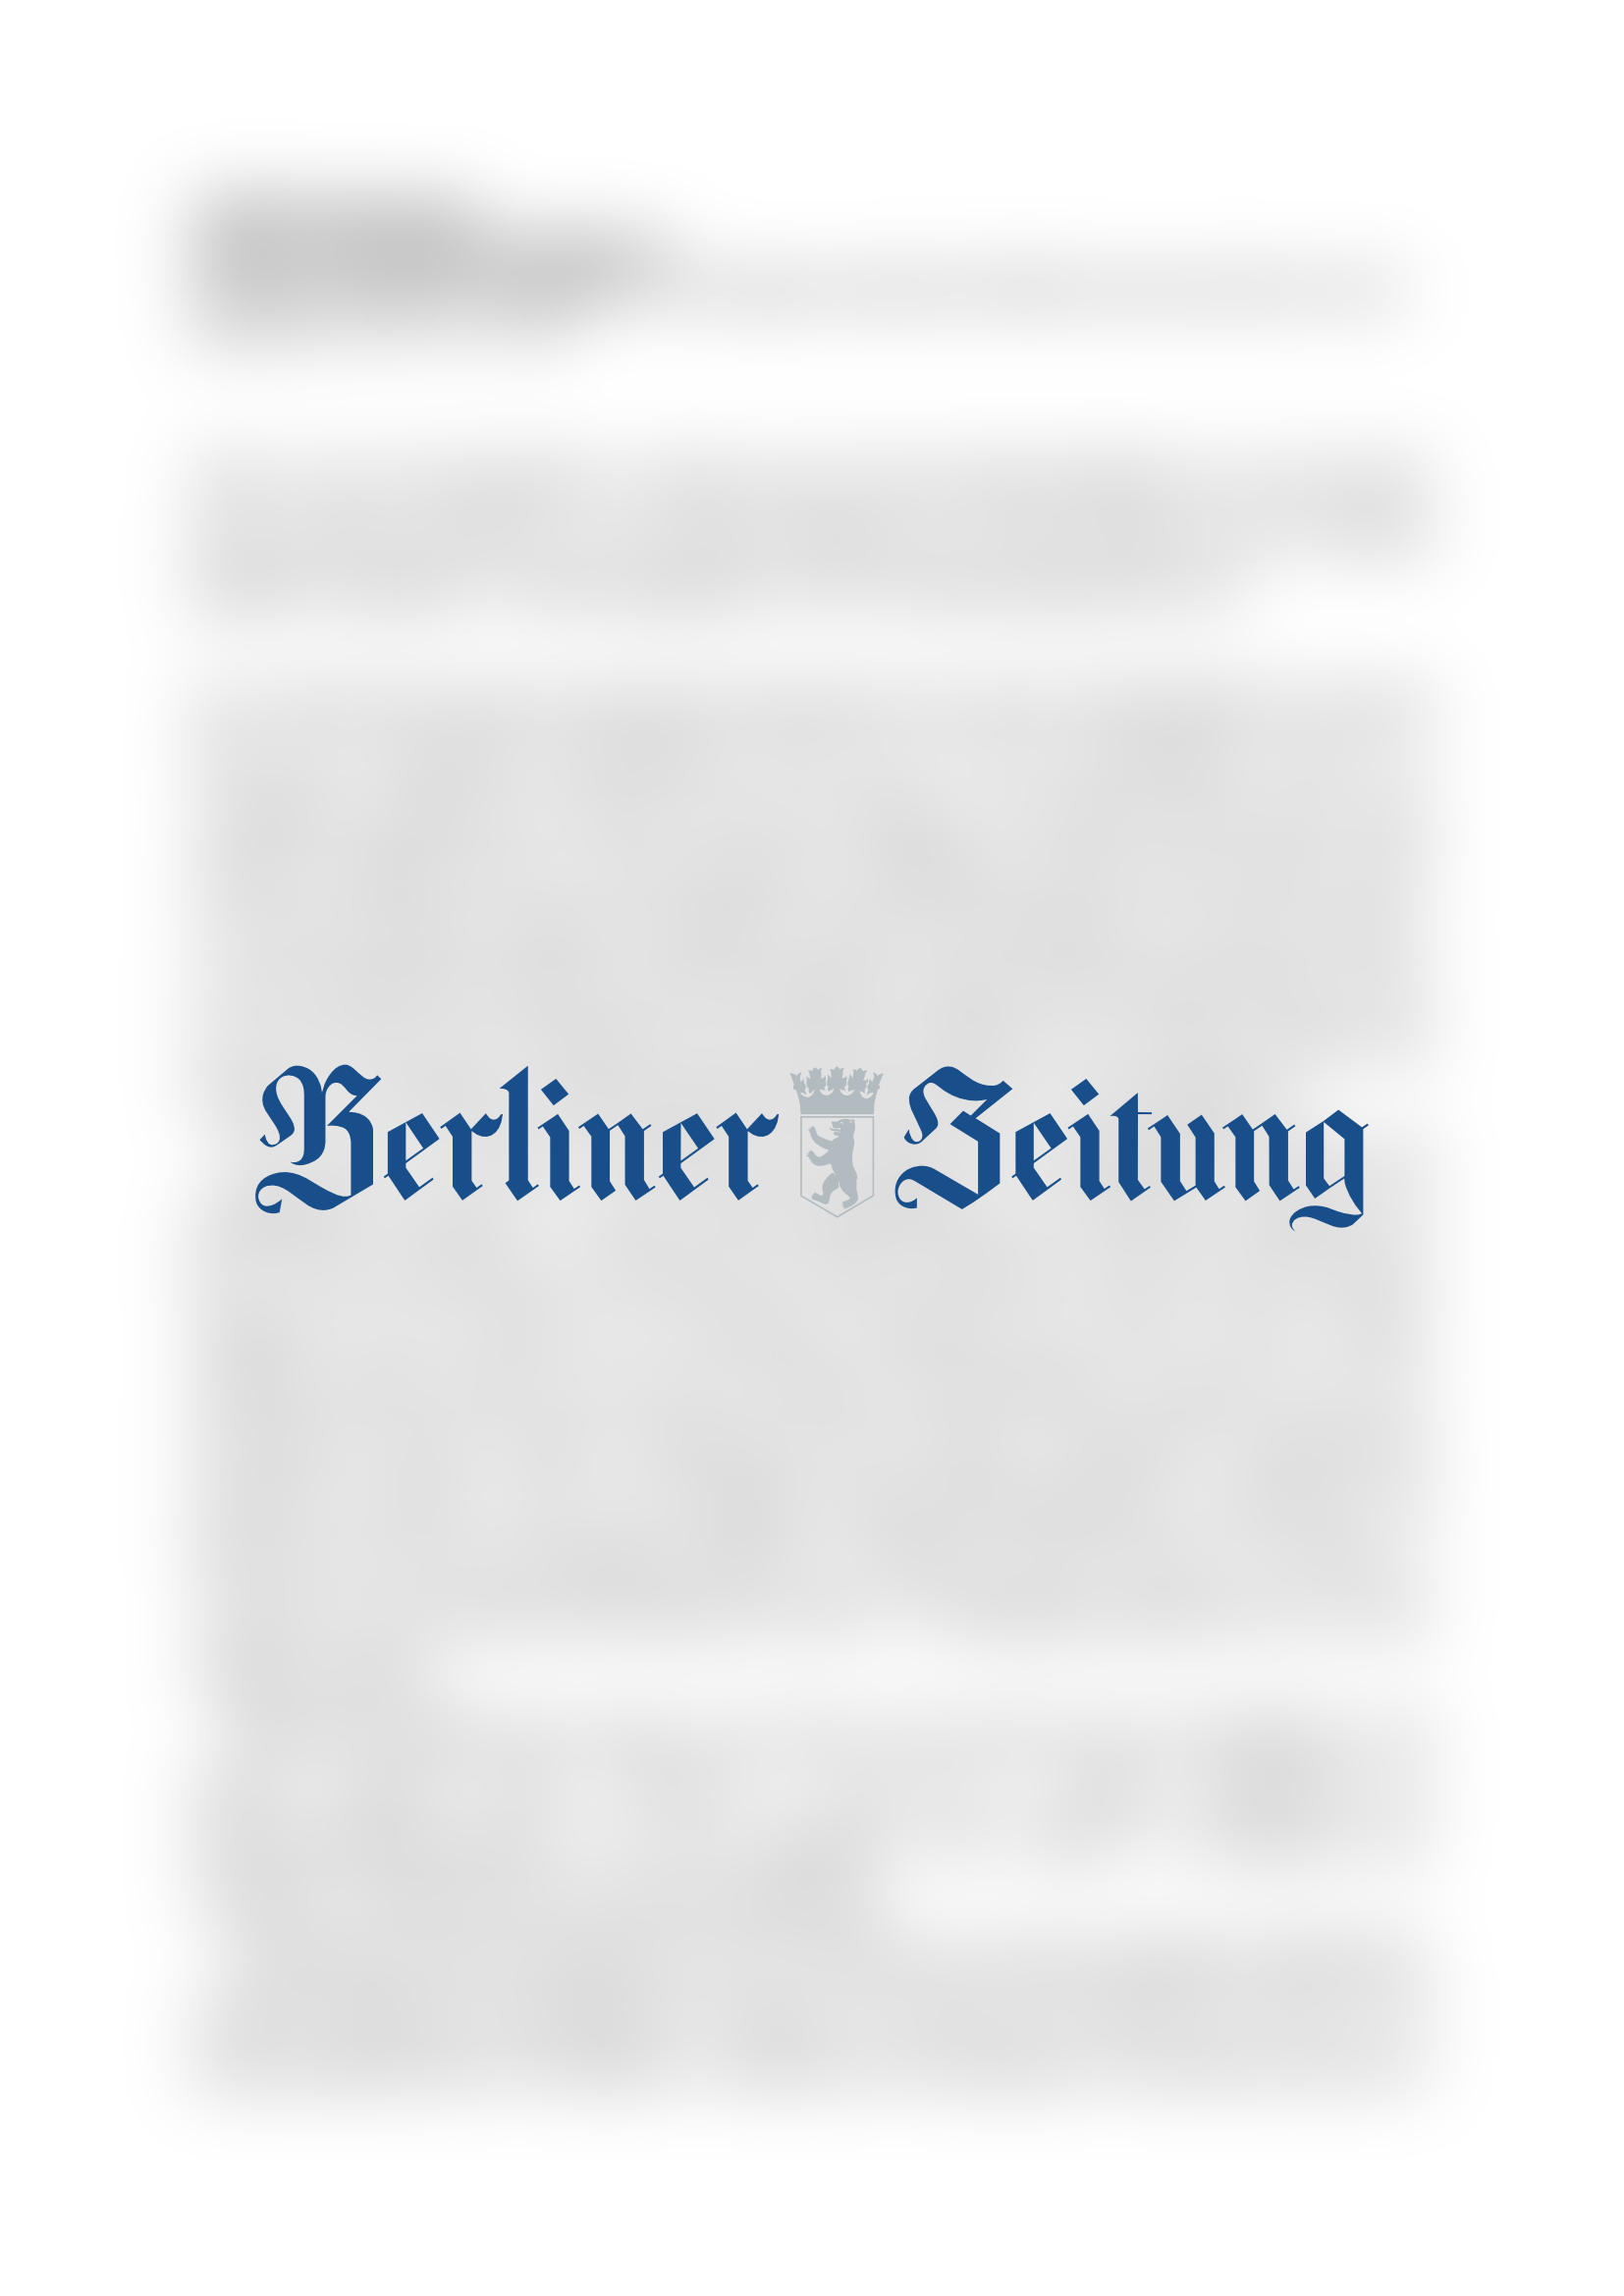 Vorschau - Berliner Zeitung